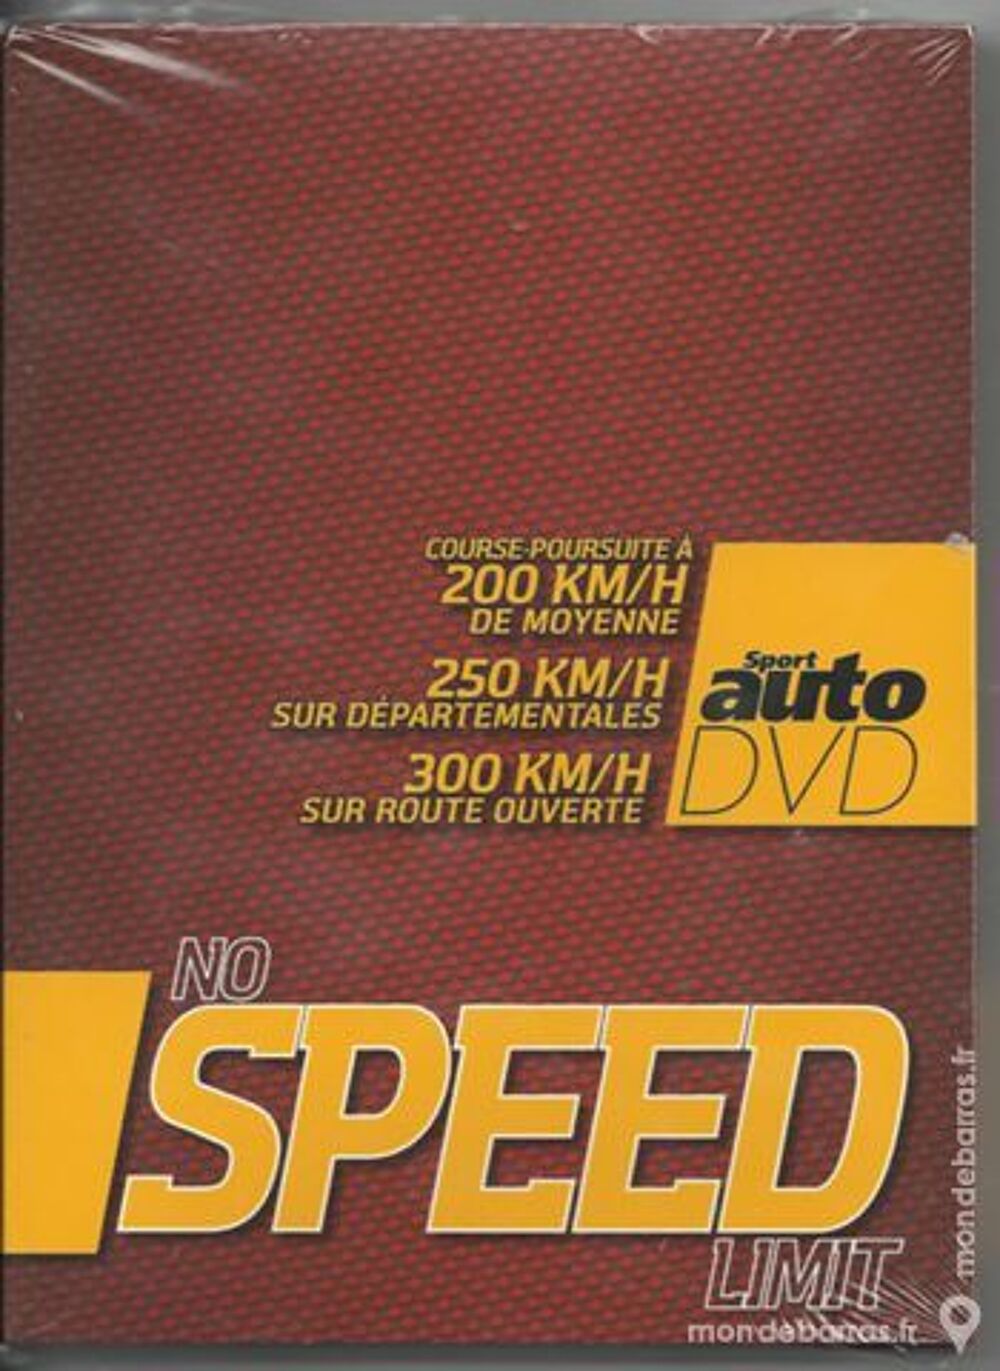 DVD SPORT AUTO NO SPEED LIMIT DVD et blu-ray